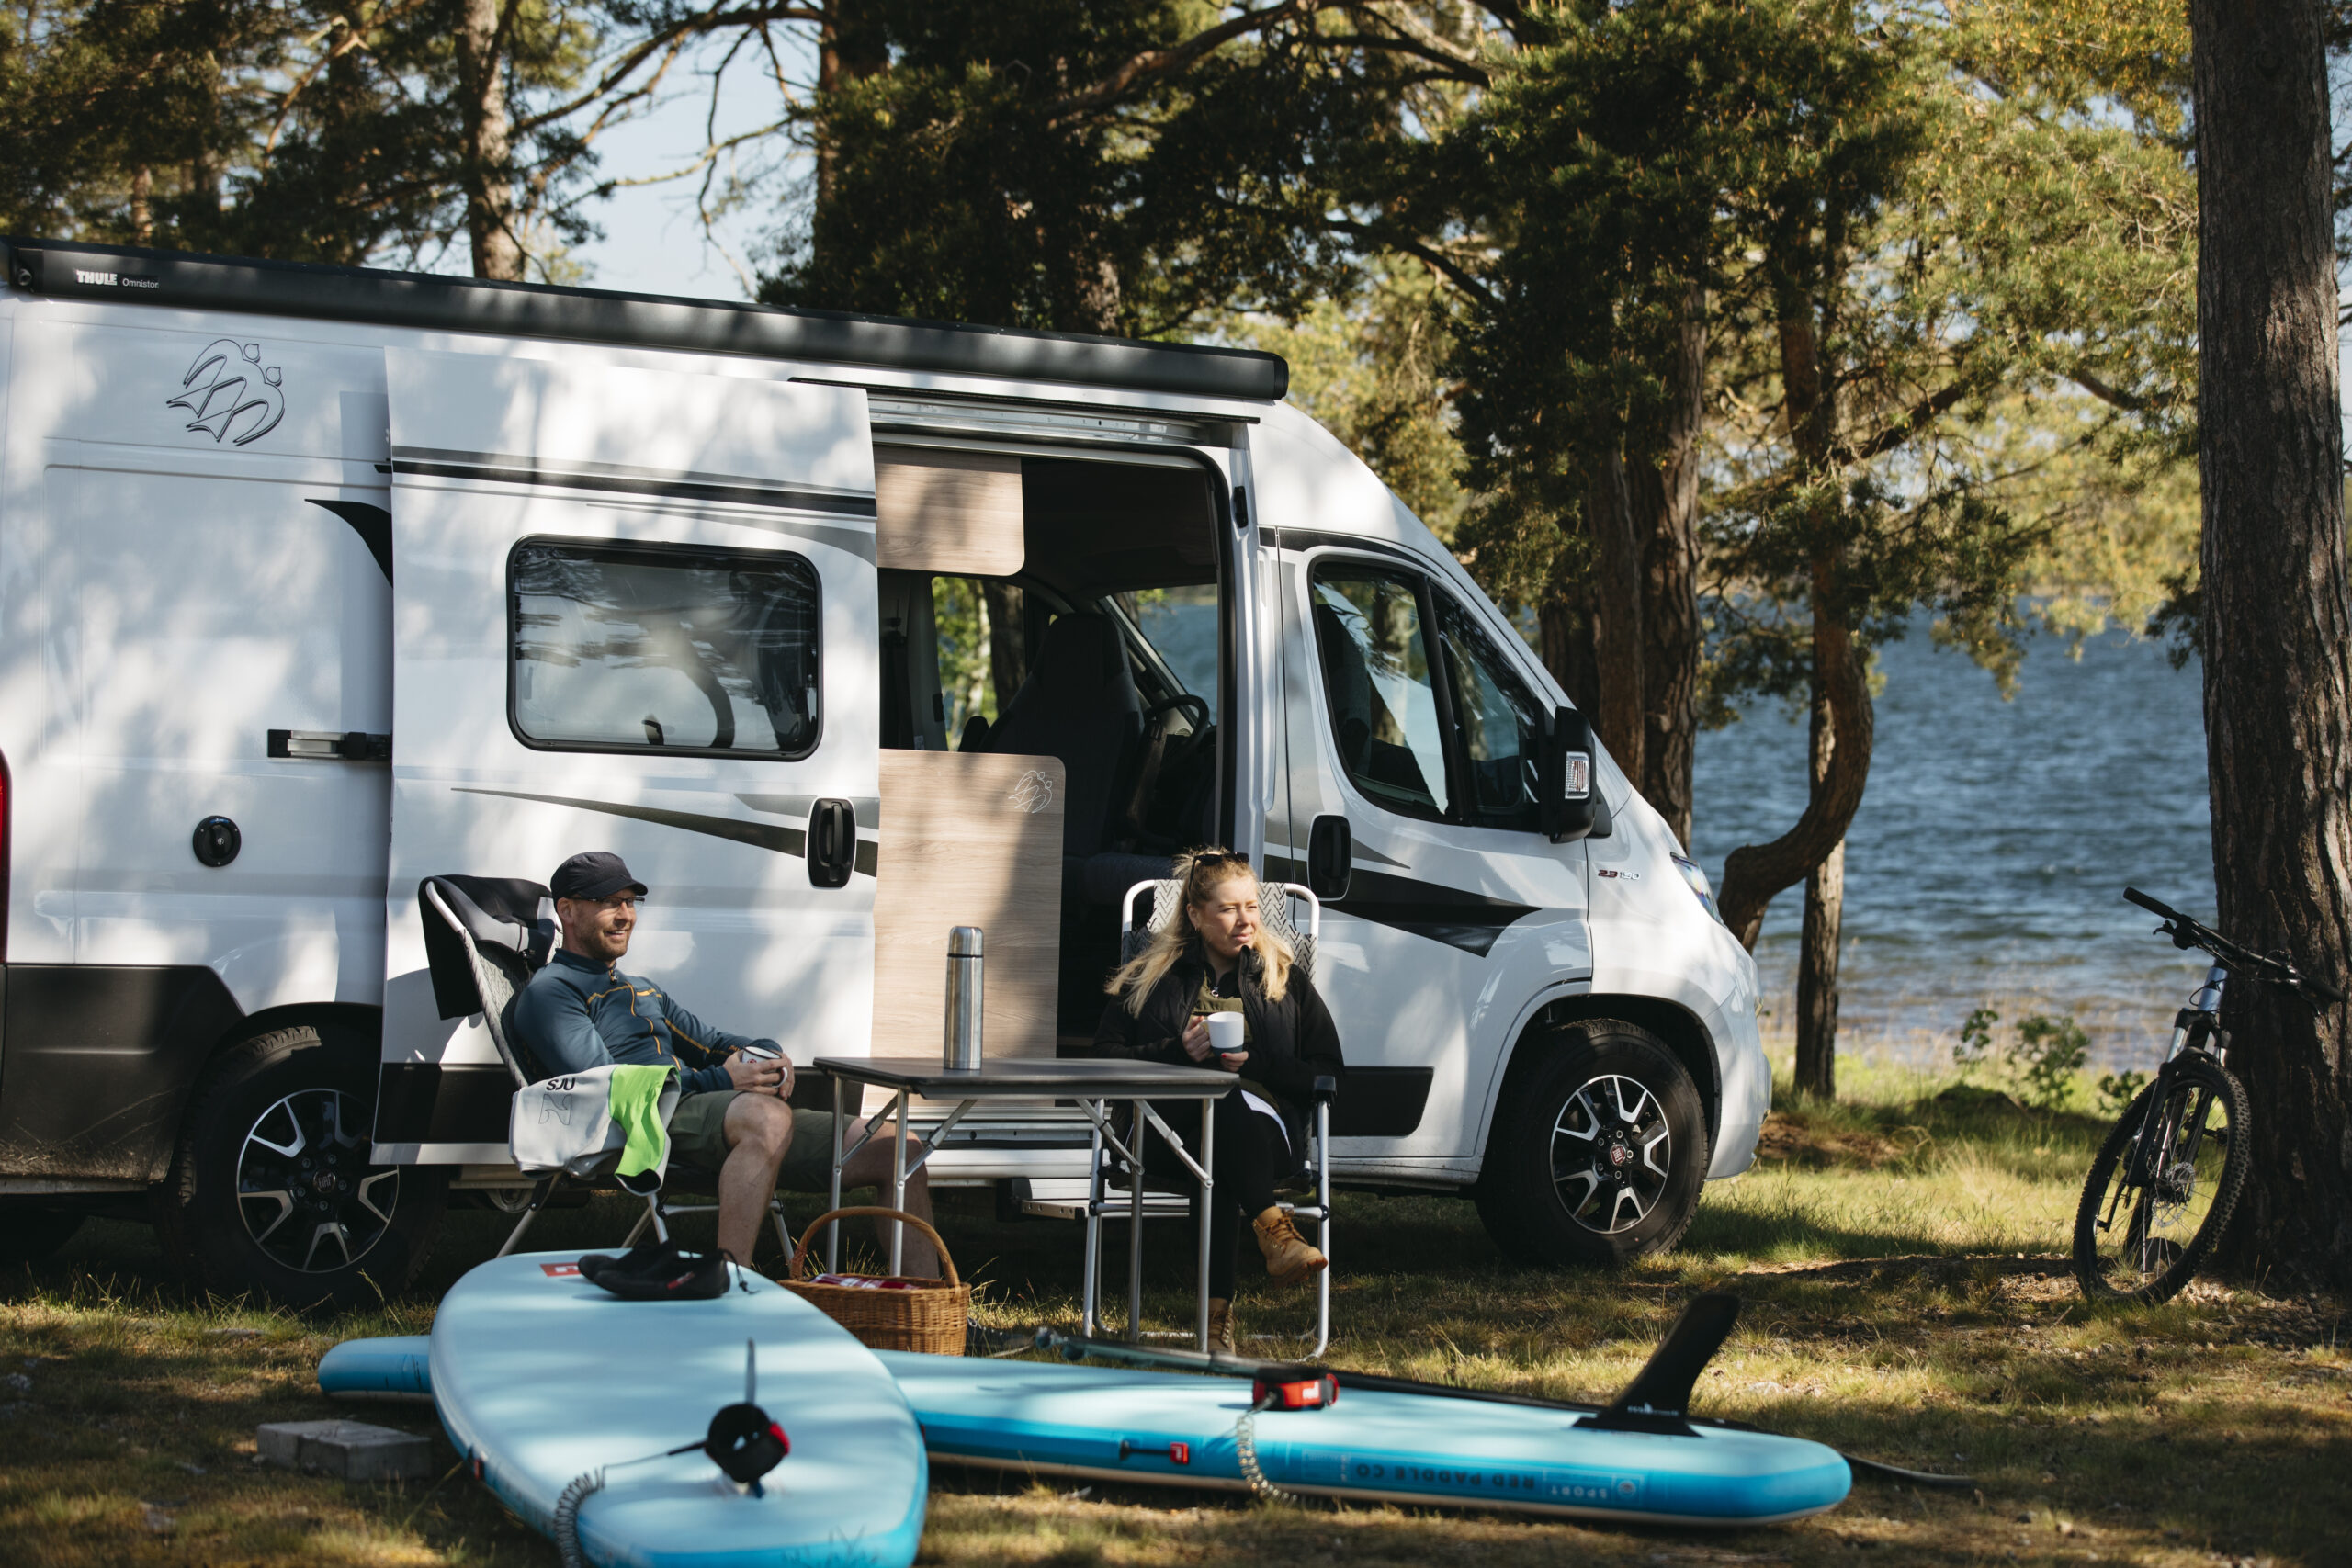 Två personer sitter i campingstolar framför paddle boards, i bakgrunden syns en husbil och hav